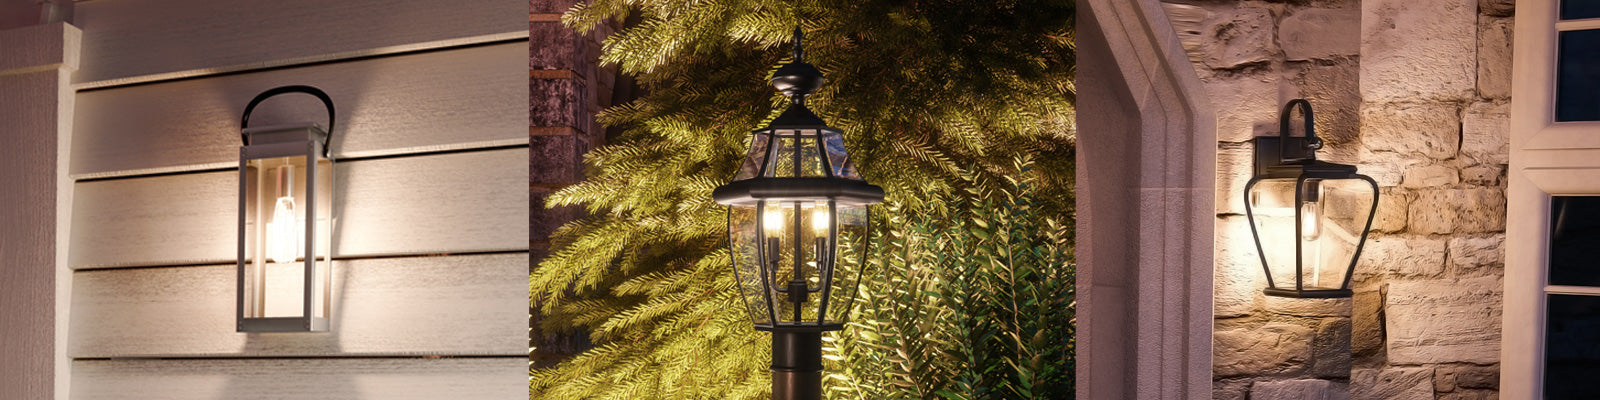 High-End Outdoor Light Fixtures  Luxury Outdoor Lighting – Urban